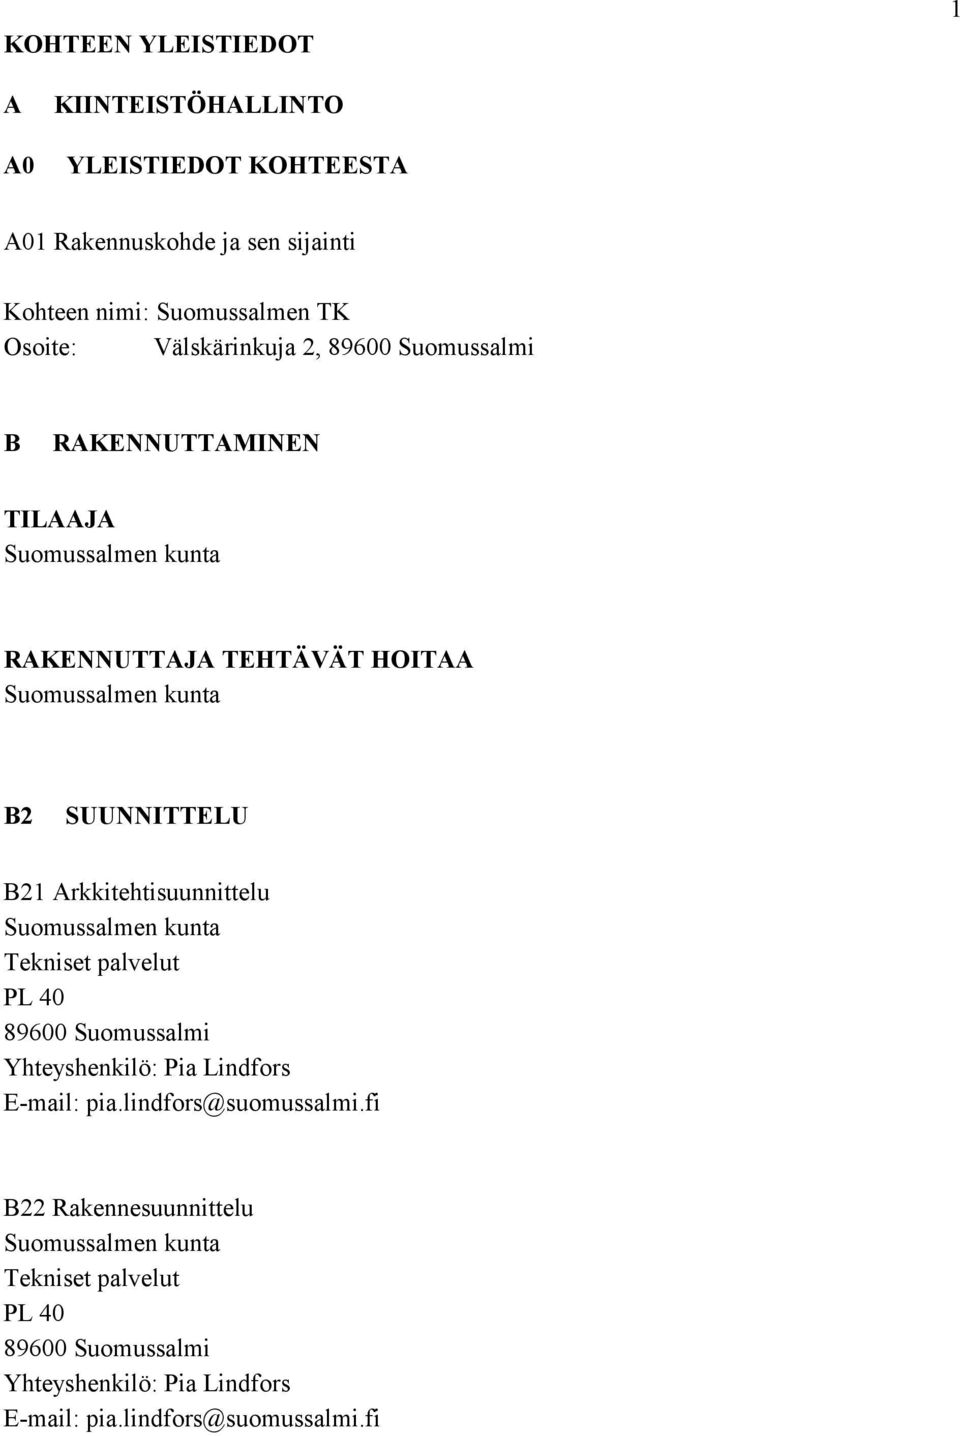 B21 Arkkitehtisuunnittelu Suomussalmen kunta Tekniset palvelut PL 40 89600 Suomussalmi Yhteyshenkilö: Pia Lindfors E-mail: pia.